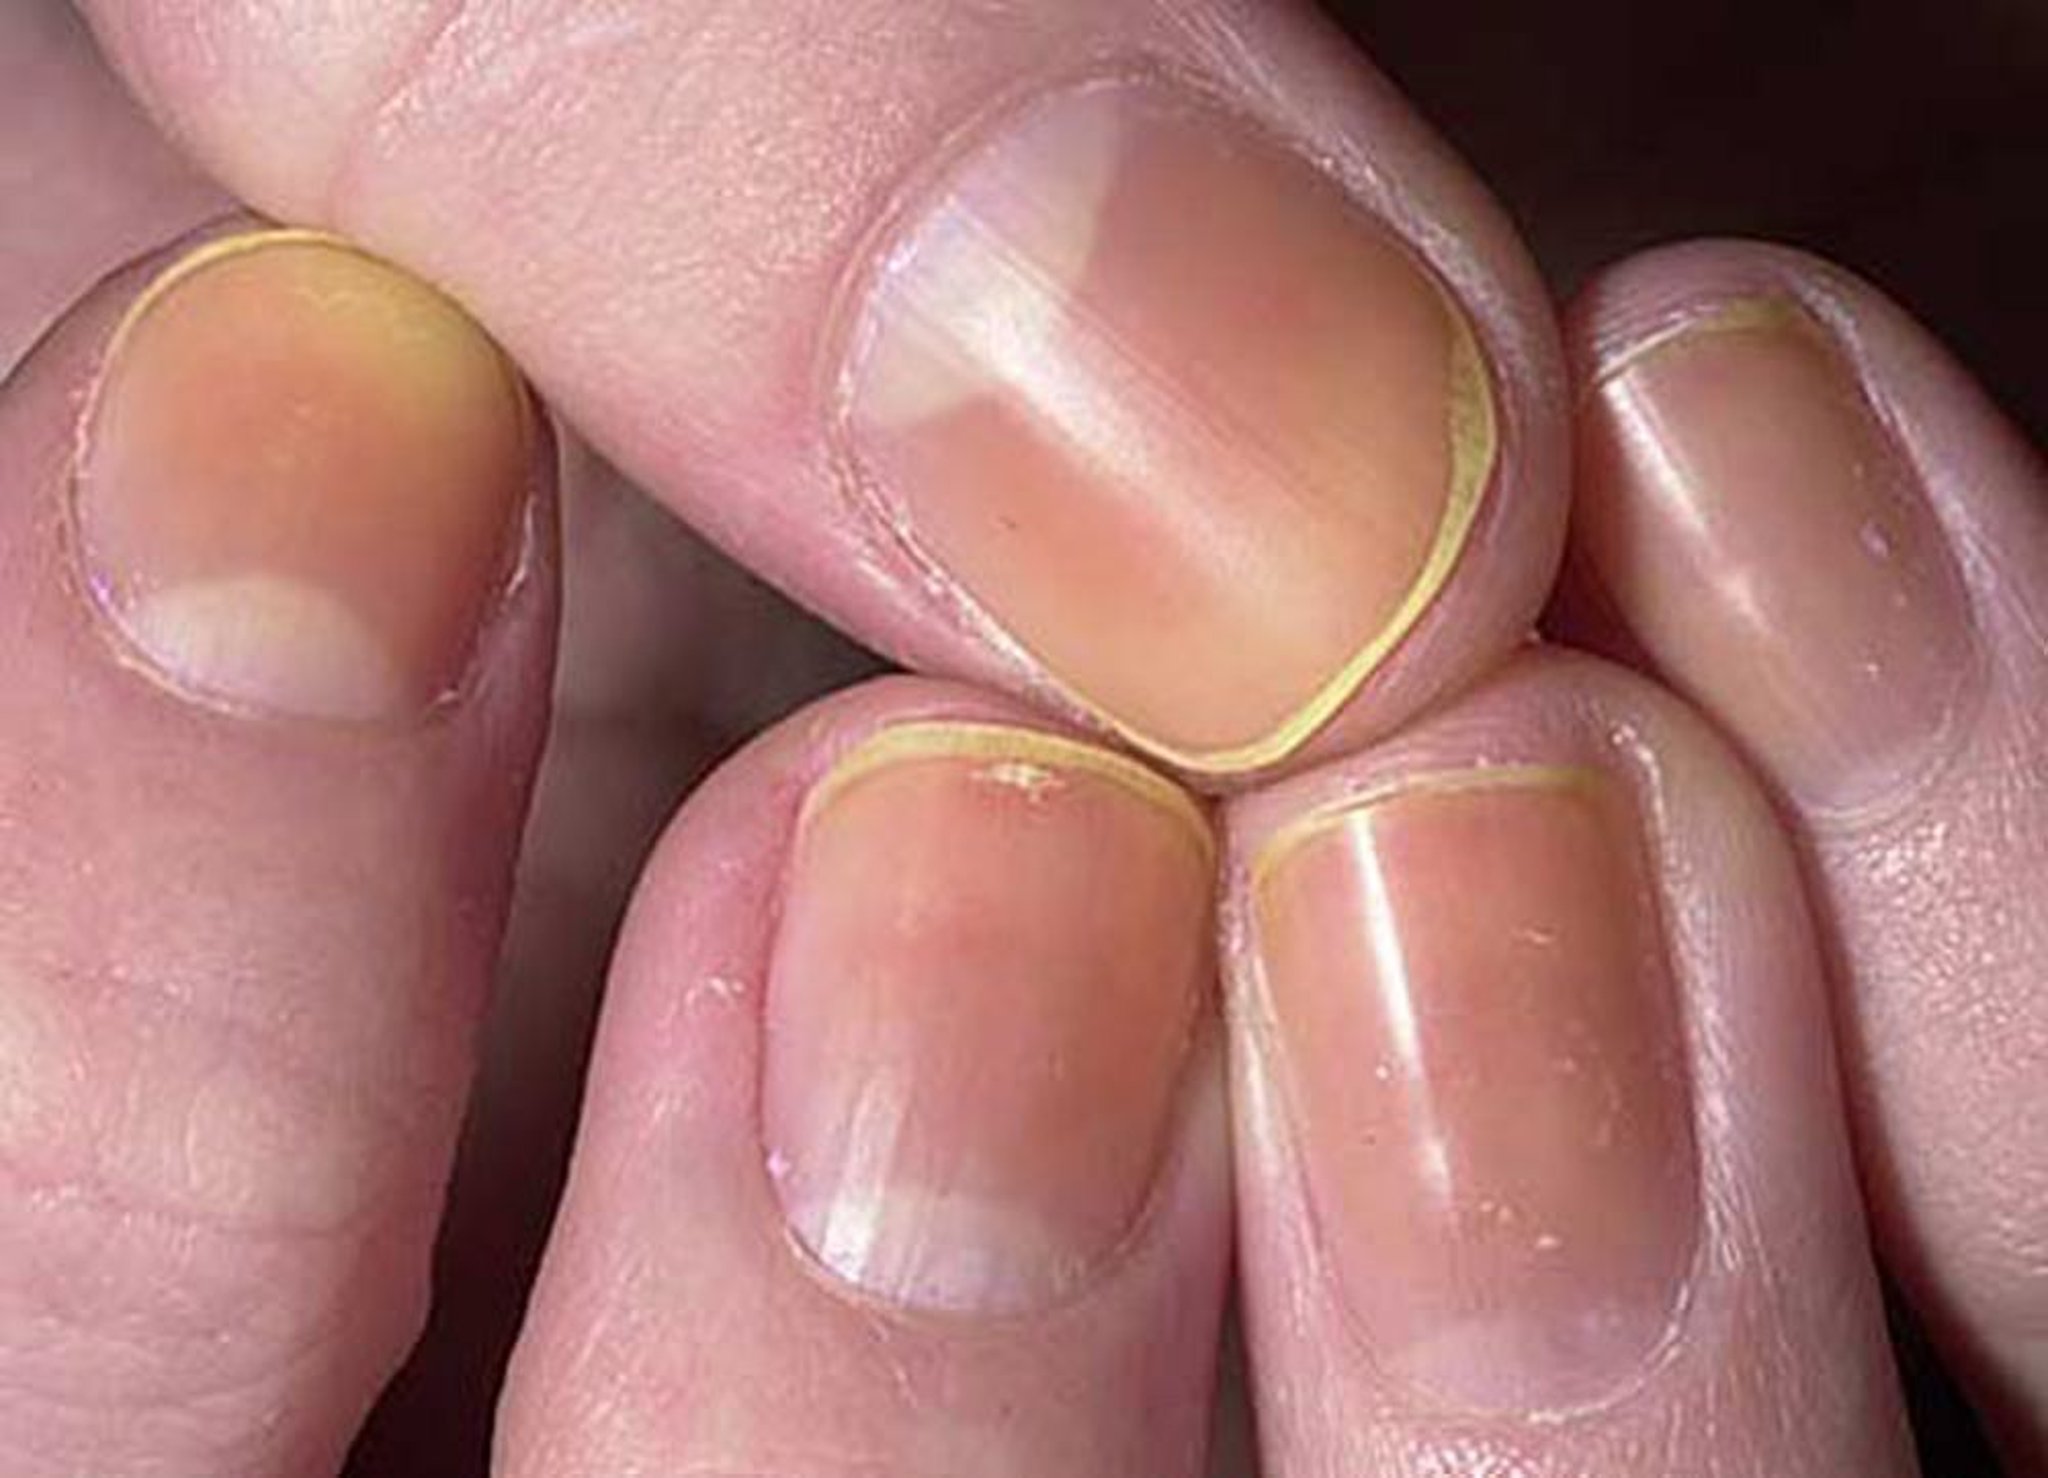 Anomalia de coloración de las uñas debido al esmalte de uñas